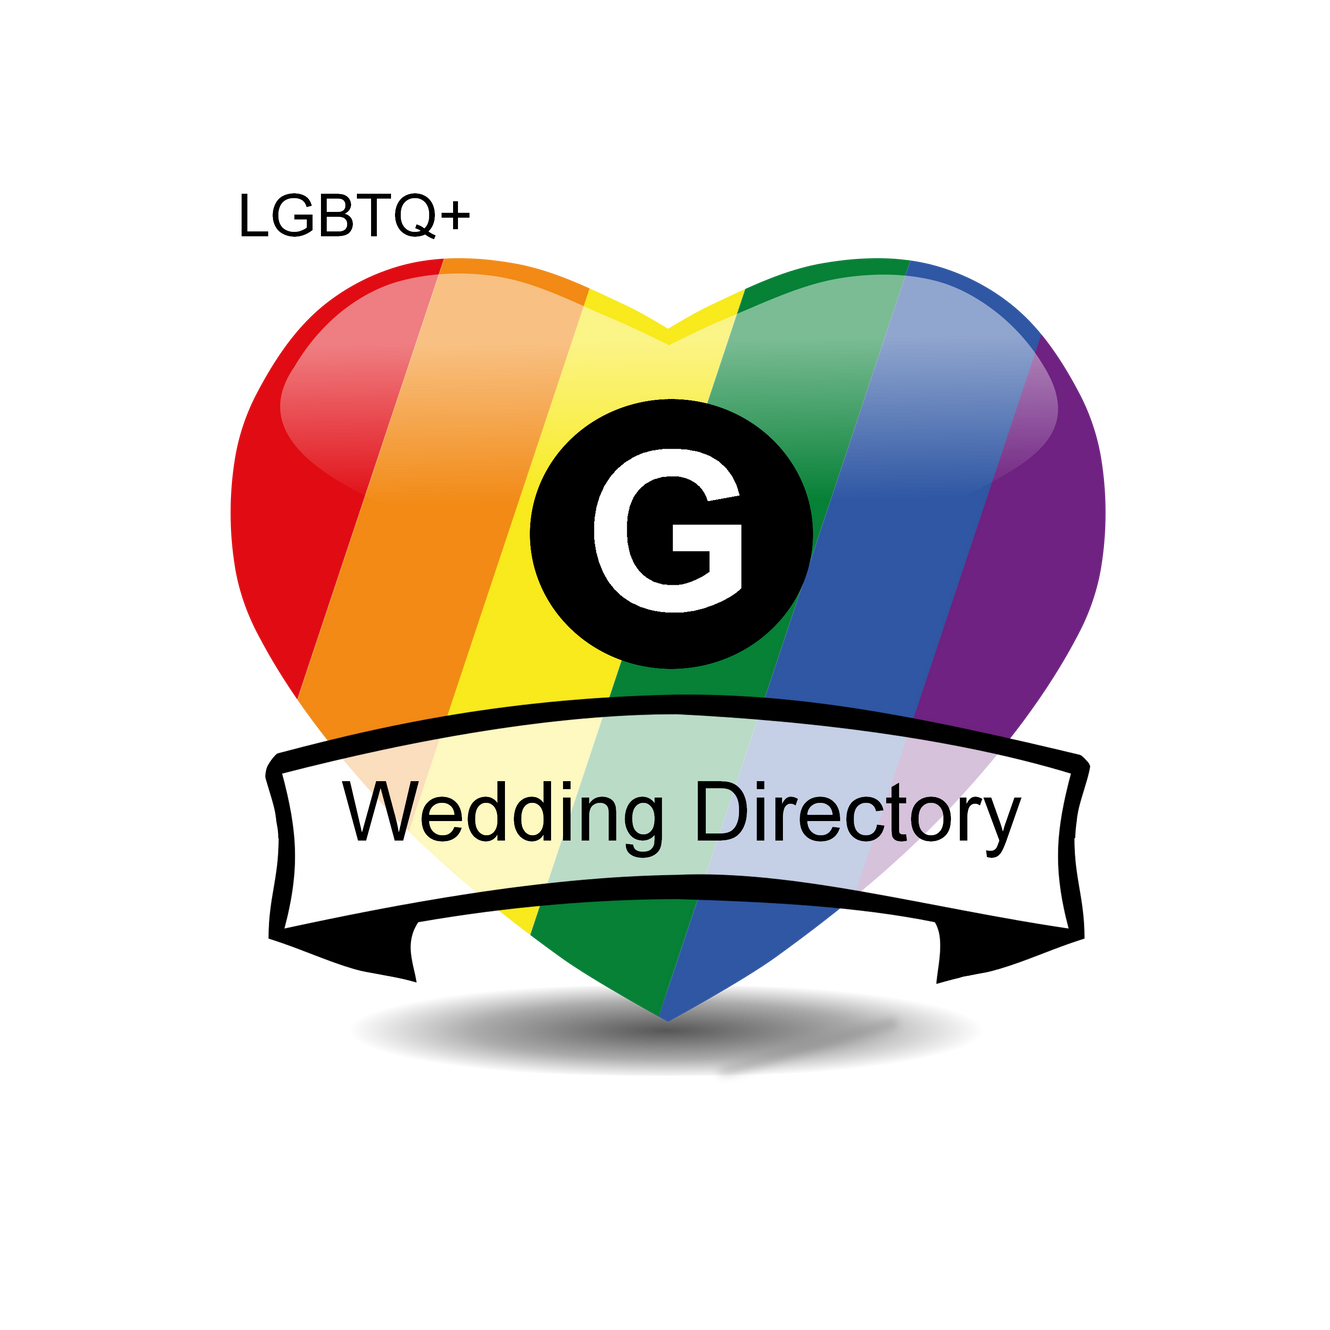 G Wedding Directory logo